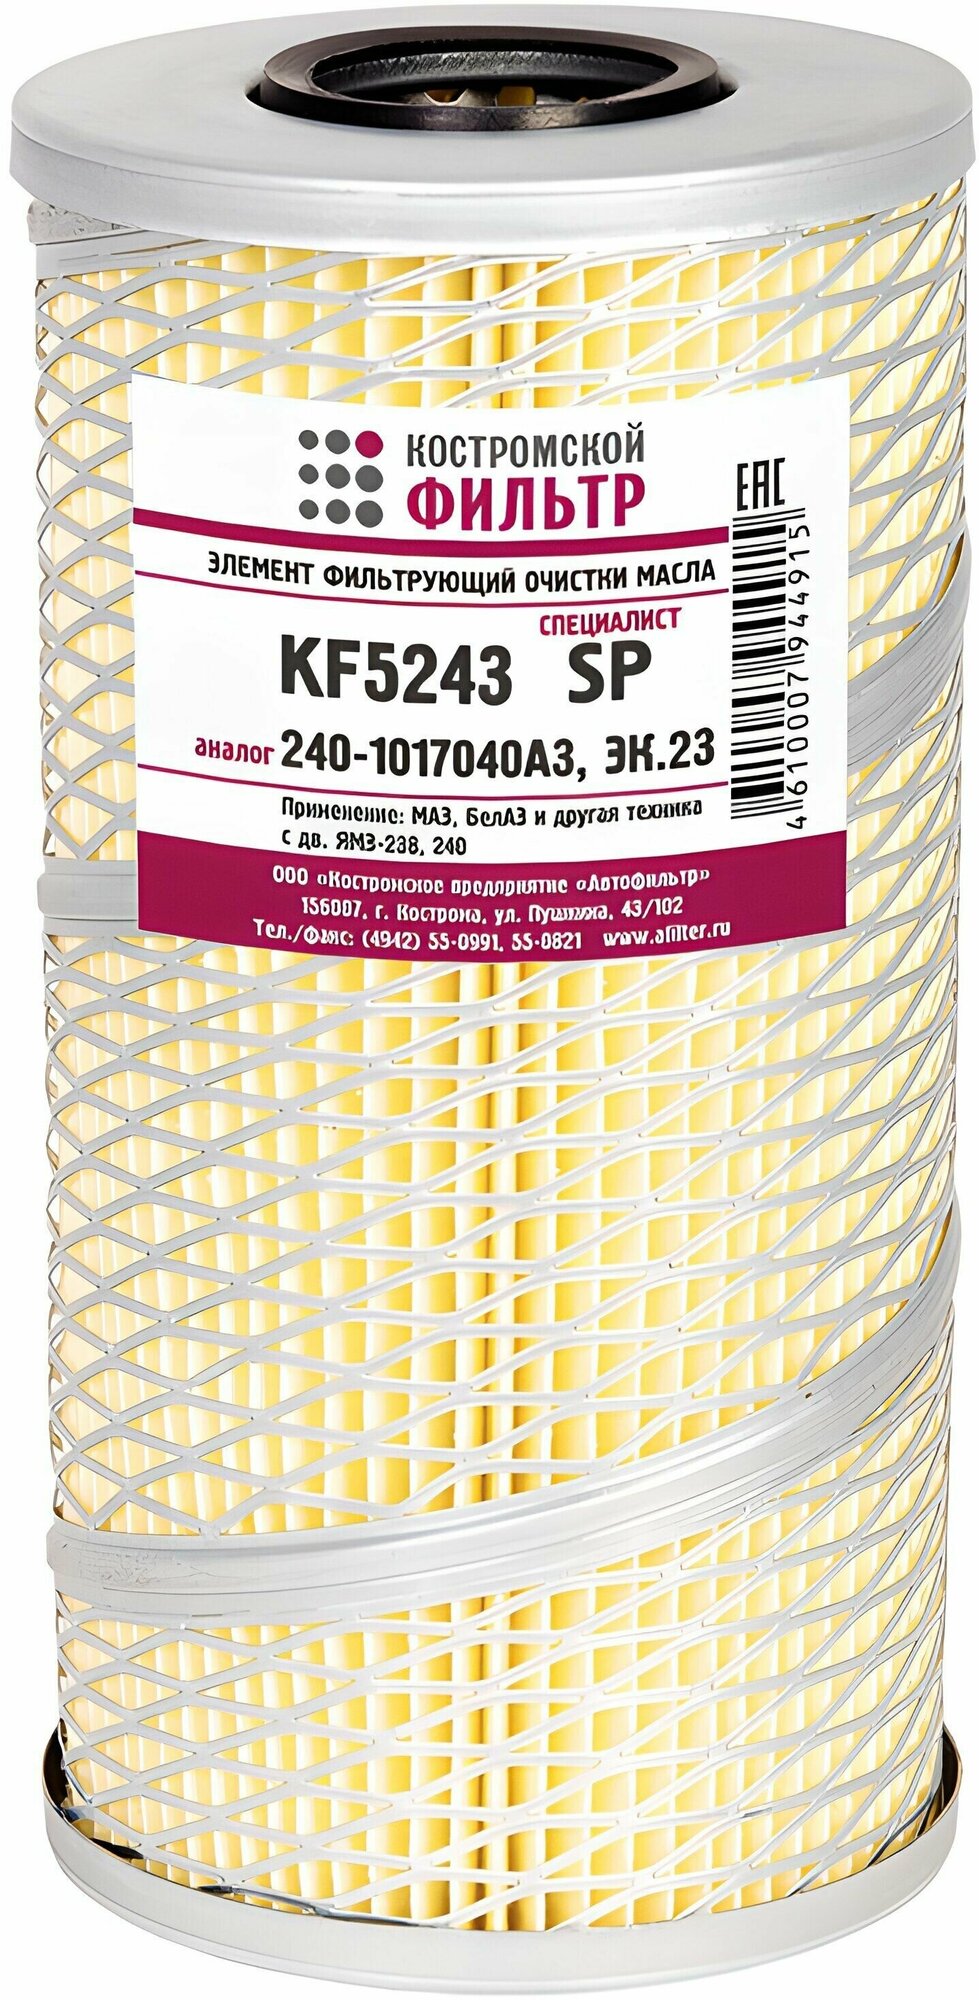 Фильтр масляный 240-1017040-А3 с двумя прокладками "Специалист" "Костромской фильтр" KF5243SP